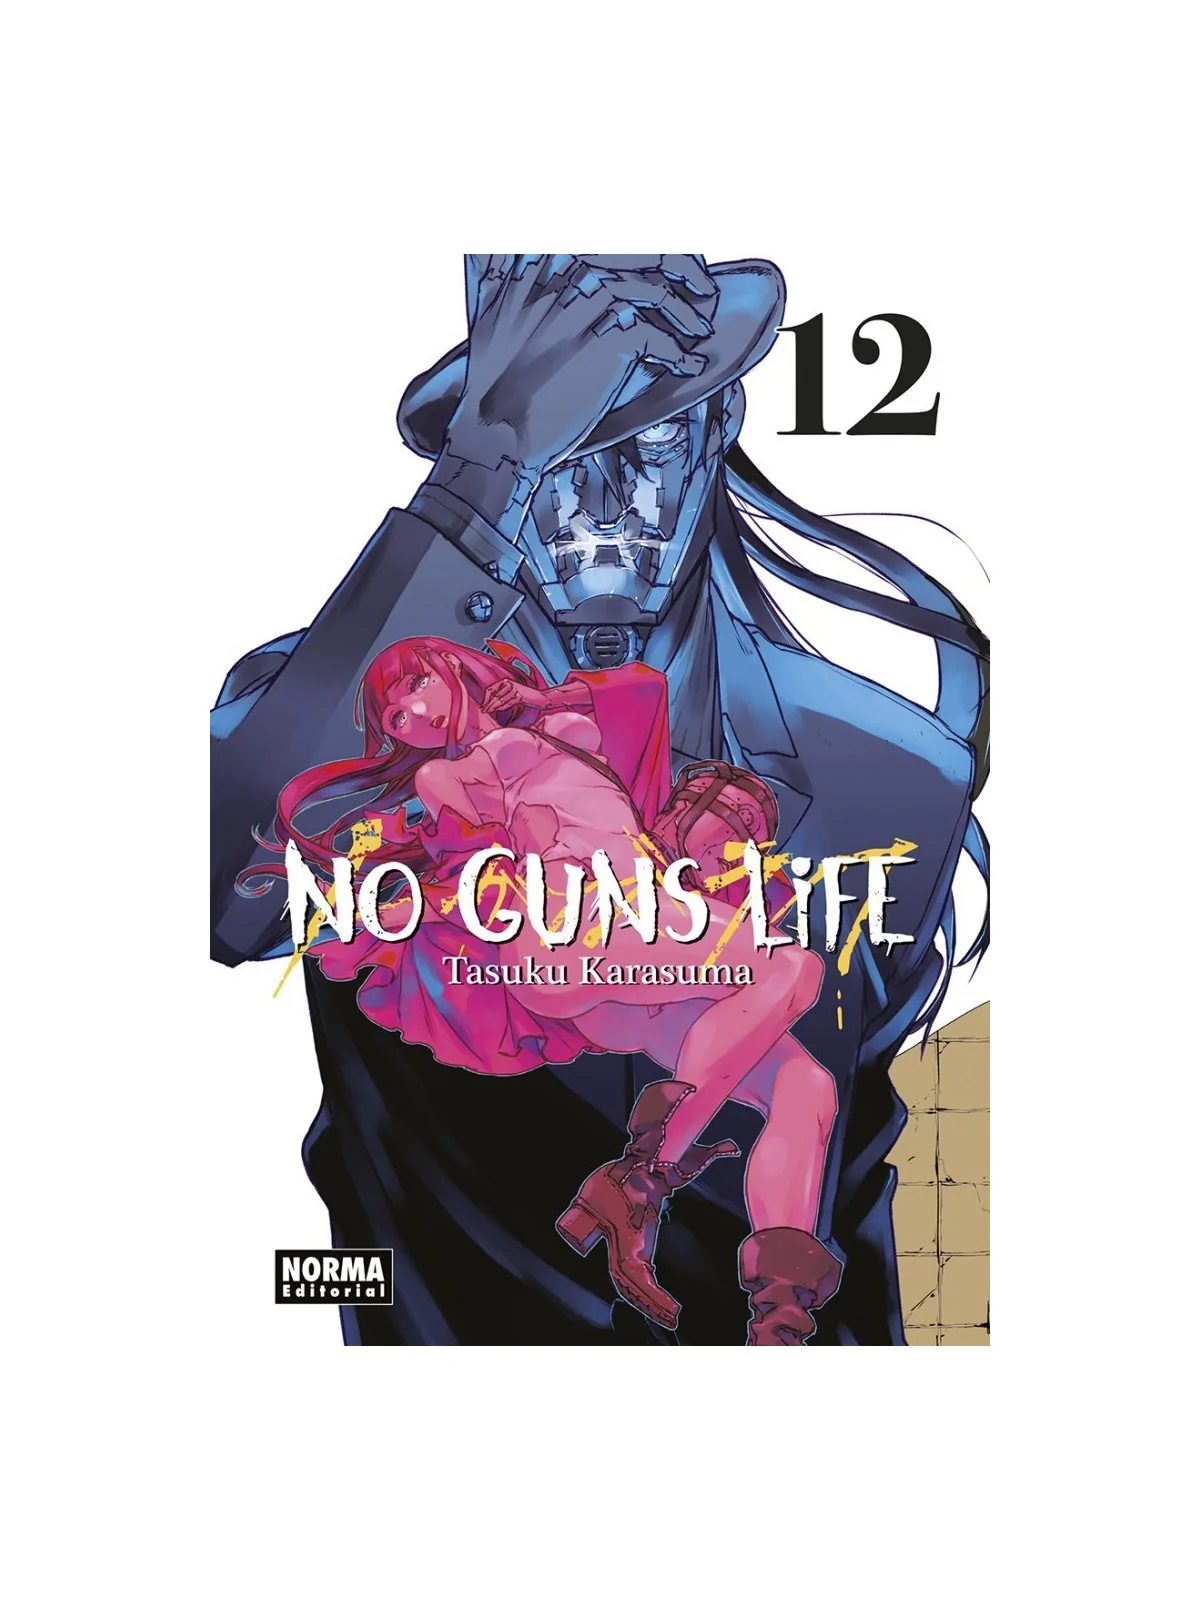 Comprar No Guns Life 12 barato al mejor precio 8,55 € de Norma Editori